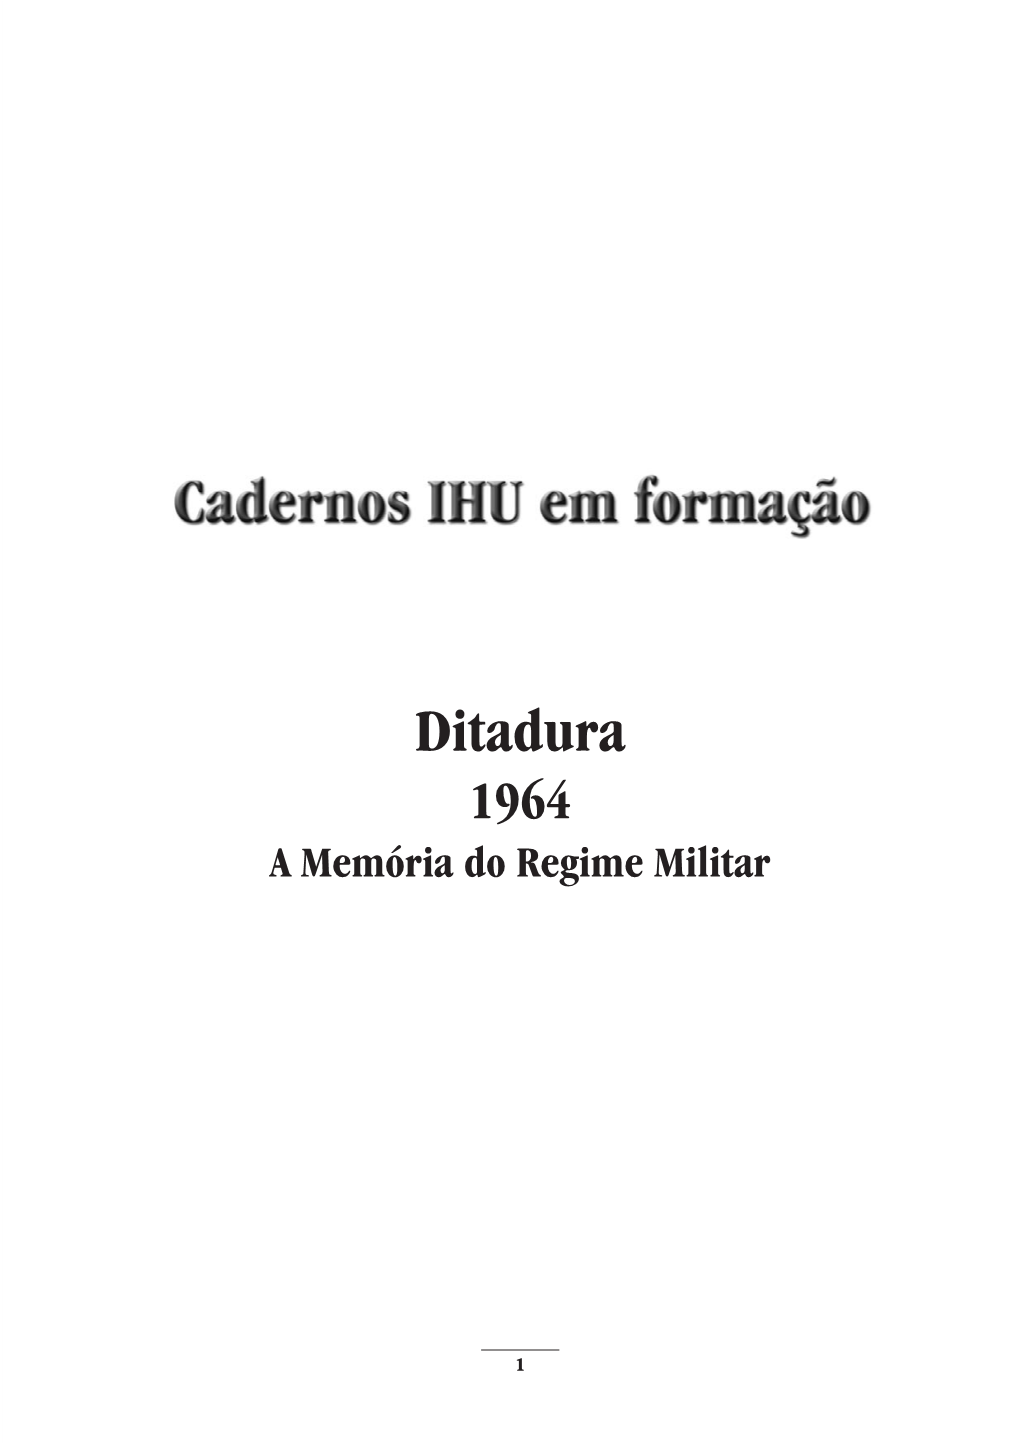 Ditadura 1964 a Memória Do Regime Militar